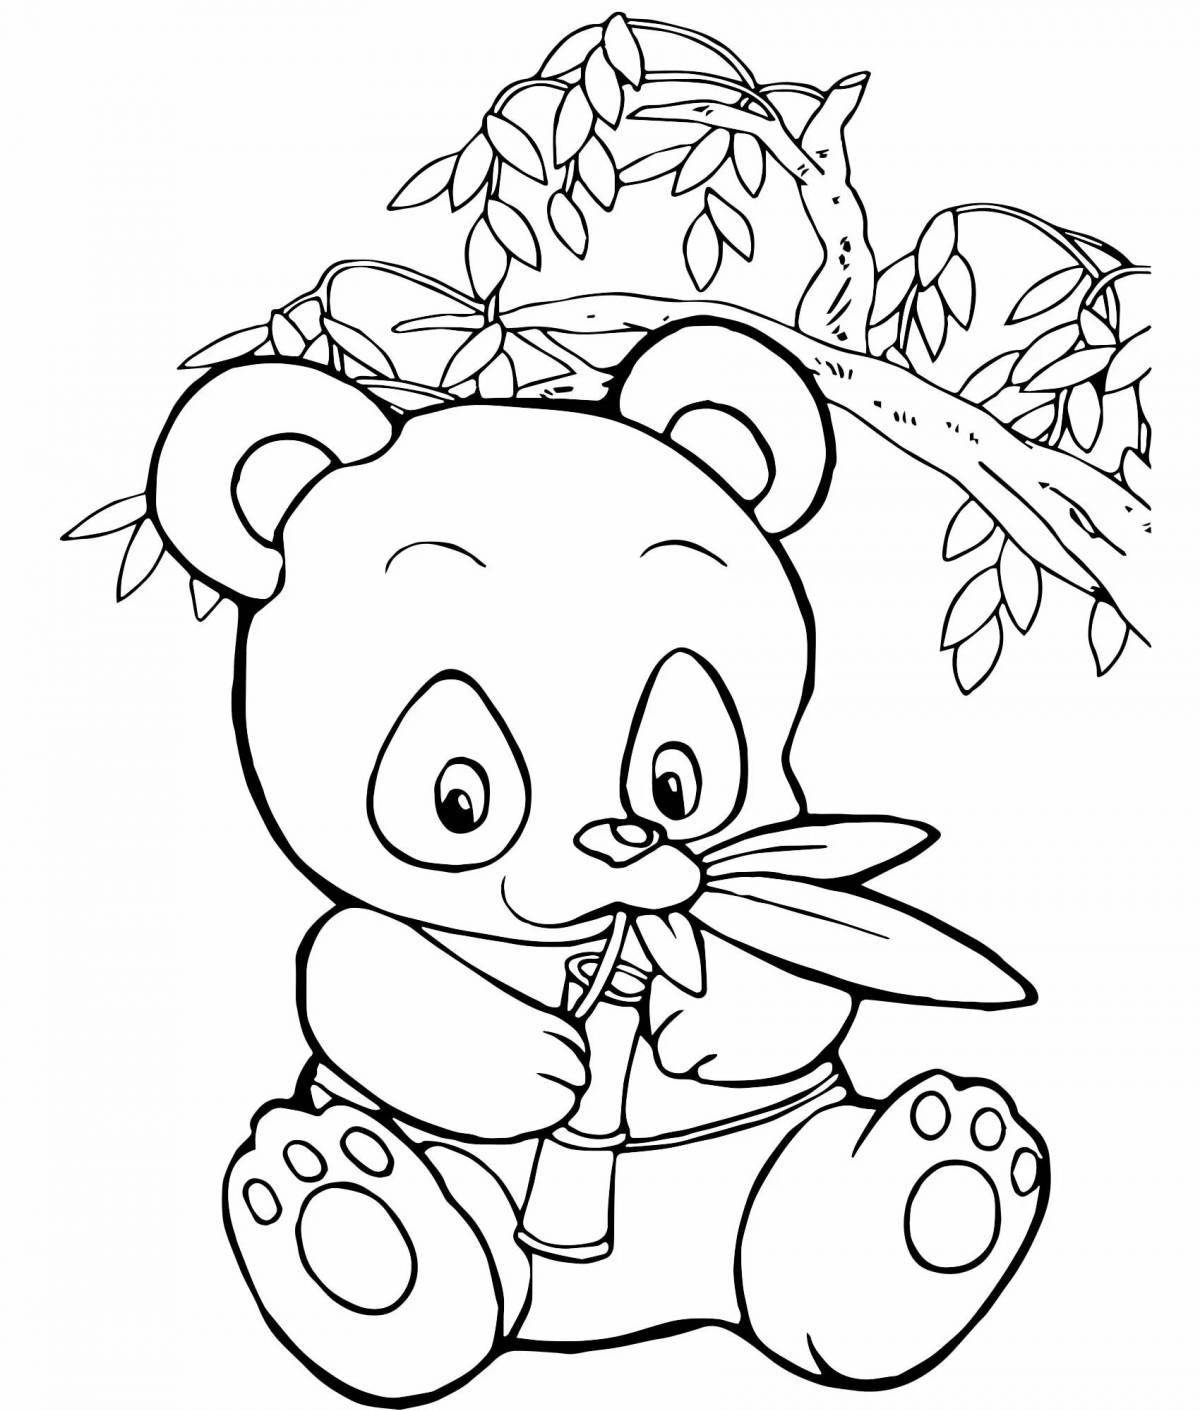 Funny panda coloring for kids